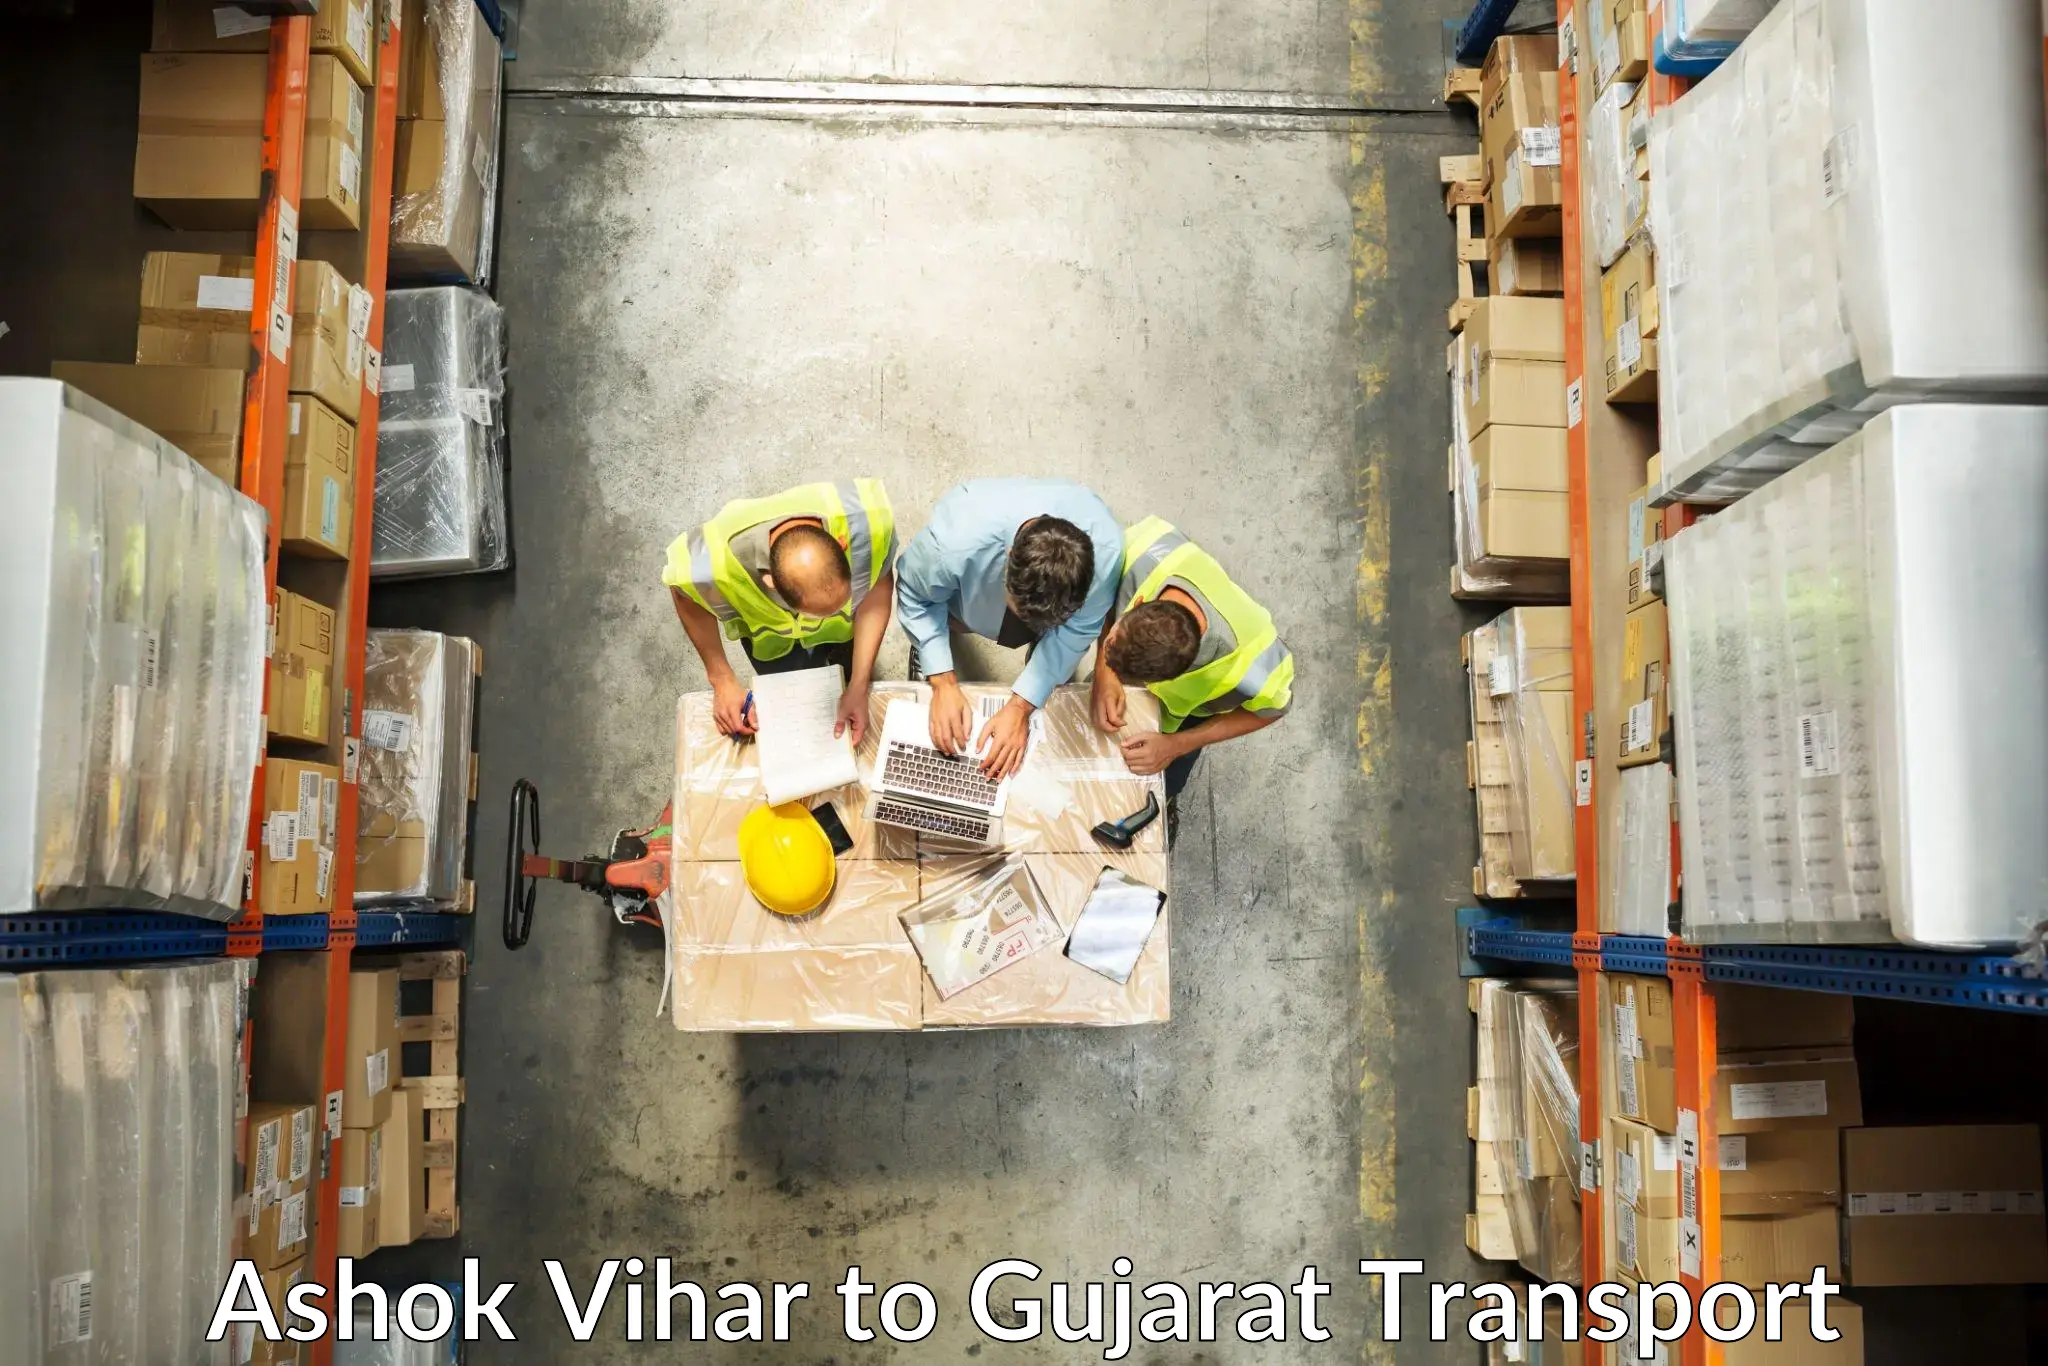 Cargo transportation services Ashok Vihar to Girgadhada